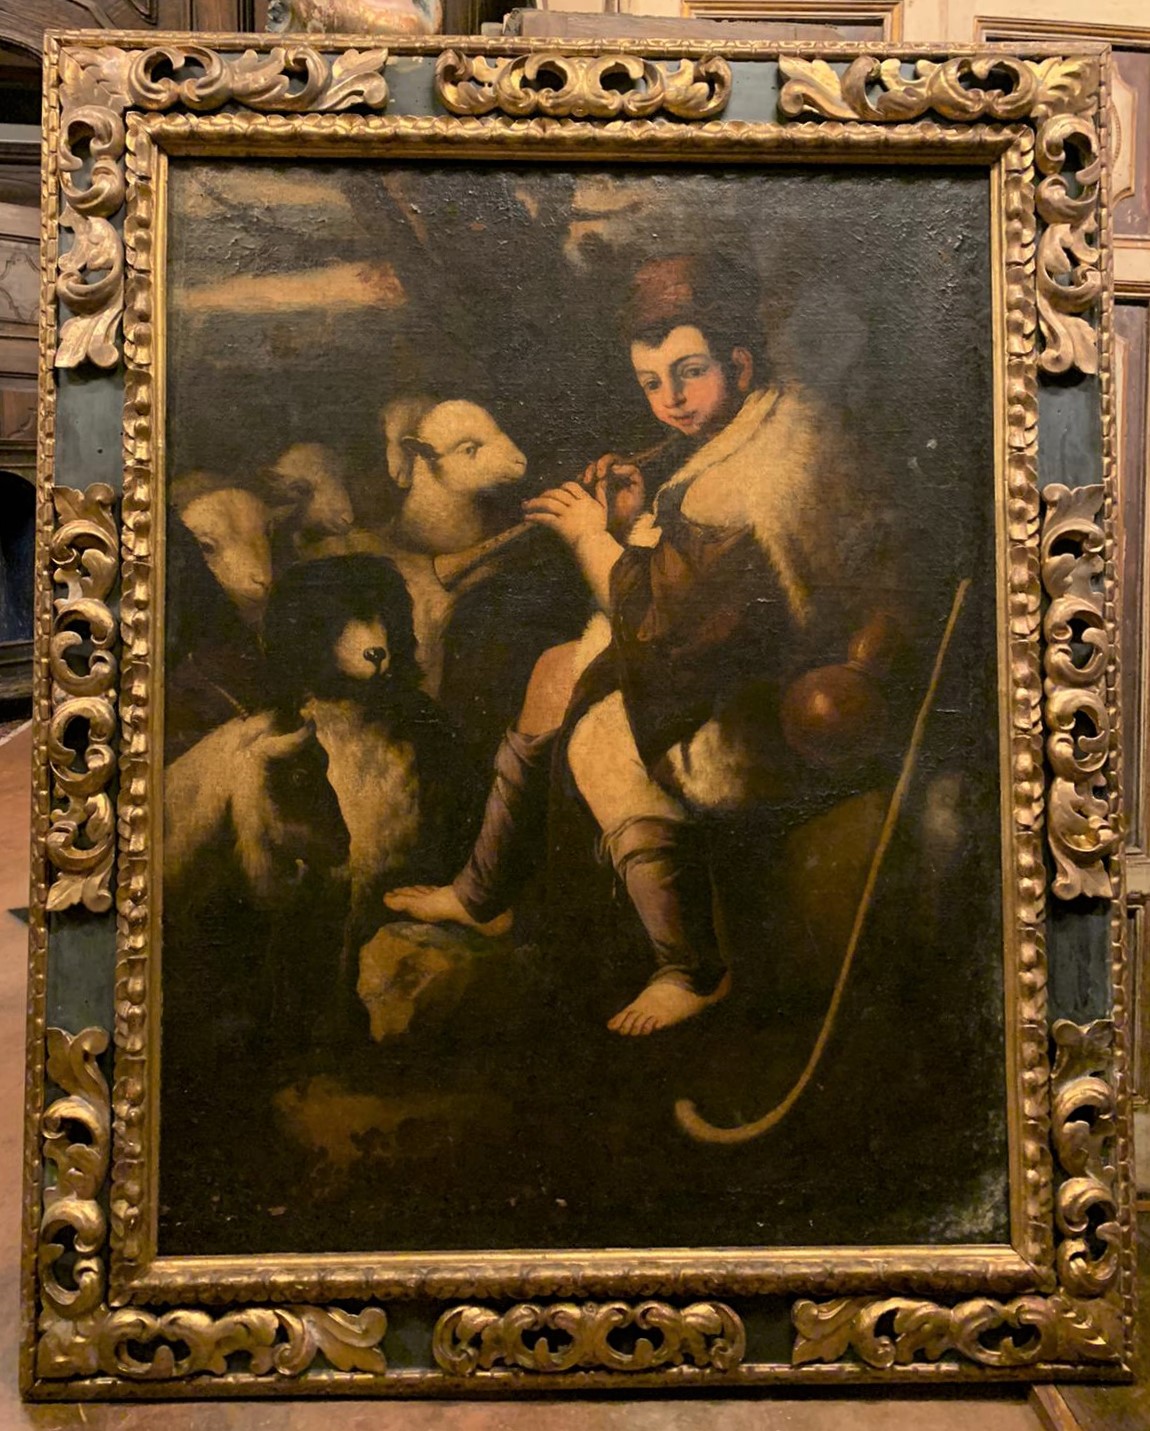 A pan374 - Peinture à l'huile sur toile, XVIIe siècle, taille cm L 150 x H 185